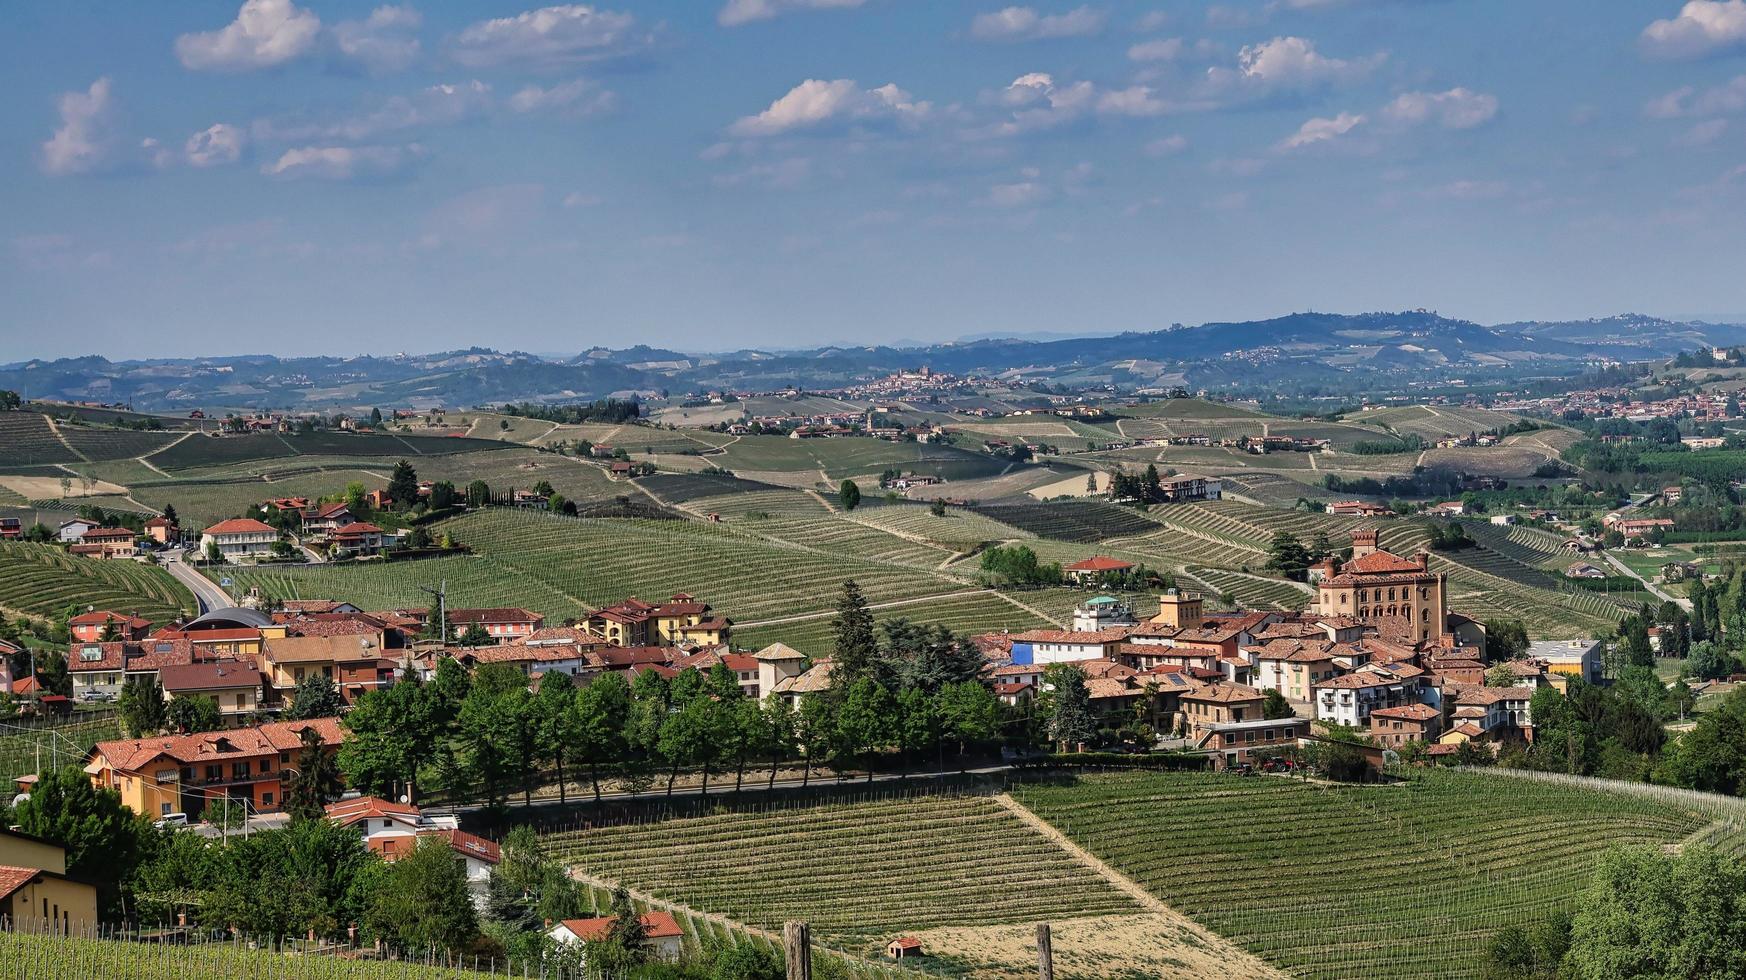 Landschaften der piemontesischen Langhe von Barolo und Monforte d'Alba mit ihren Weinbergen im Frühjahr 2022 foto